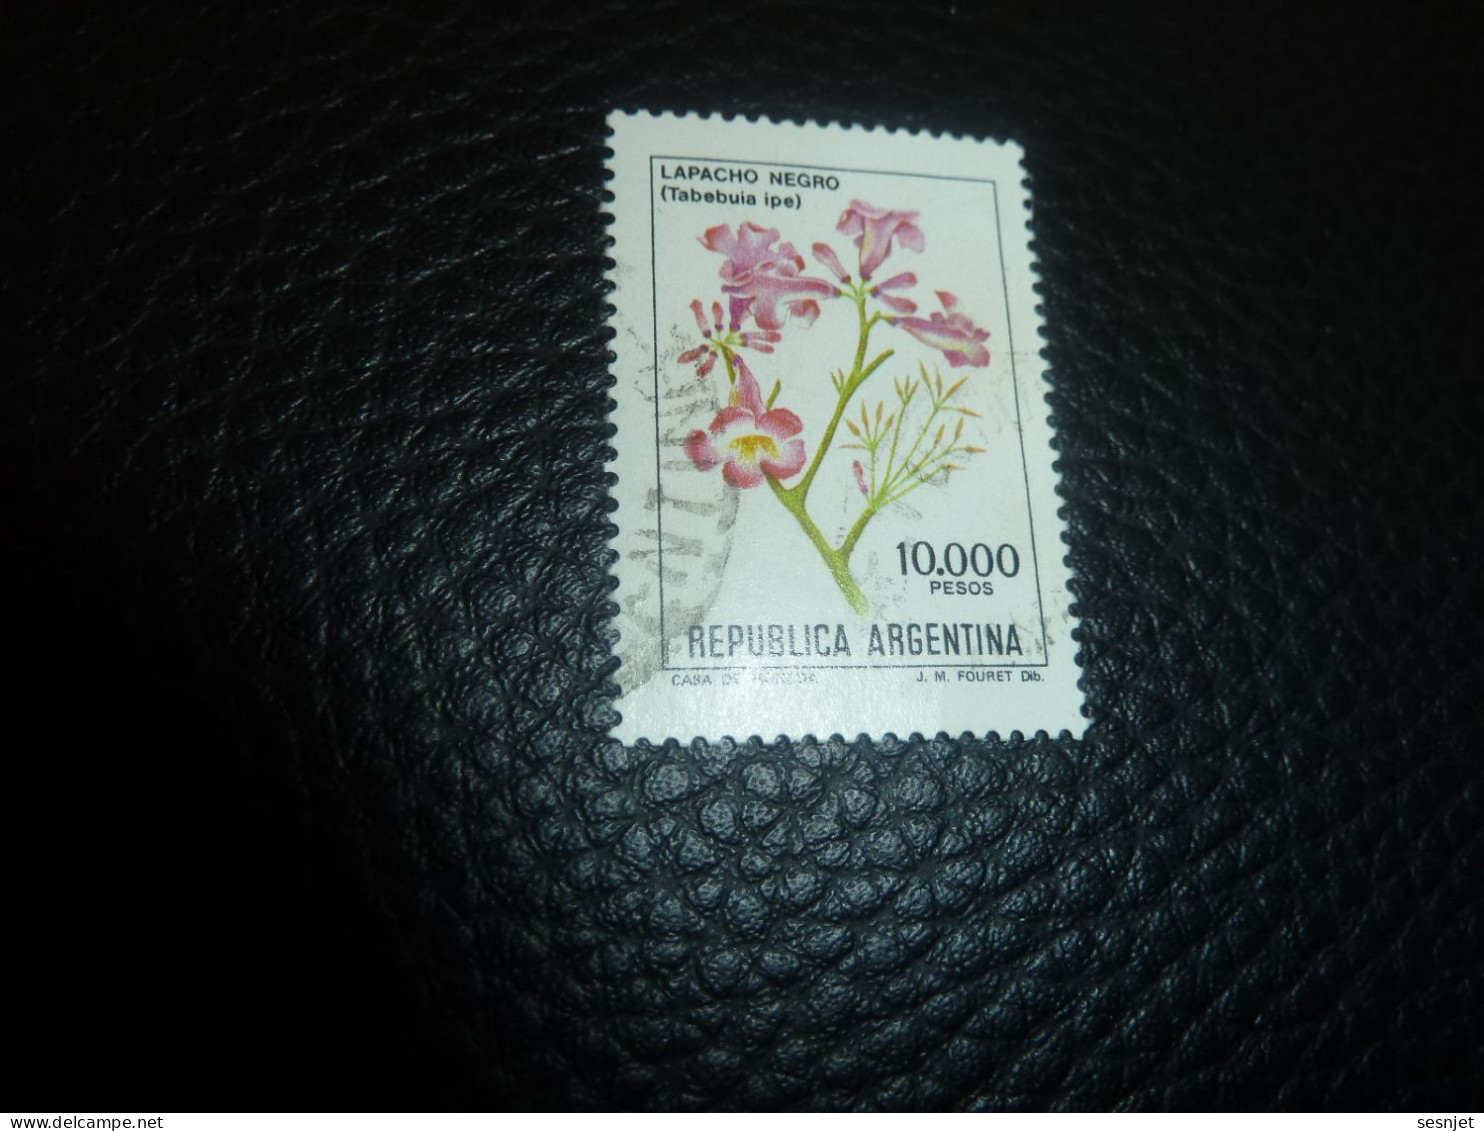 Républica Argentina - Lapacho Negro (Tabebuia Ipe) - 10.000 - Pesos - Yt 1293 - Multicolore - Oblitéré - Année 1982 - - Usati